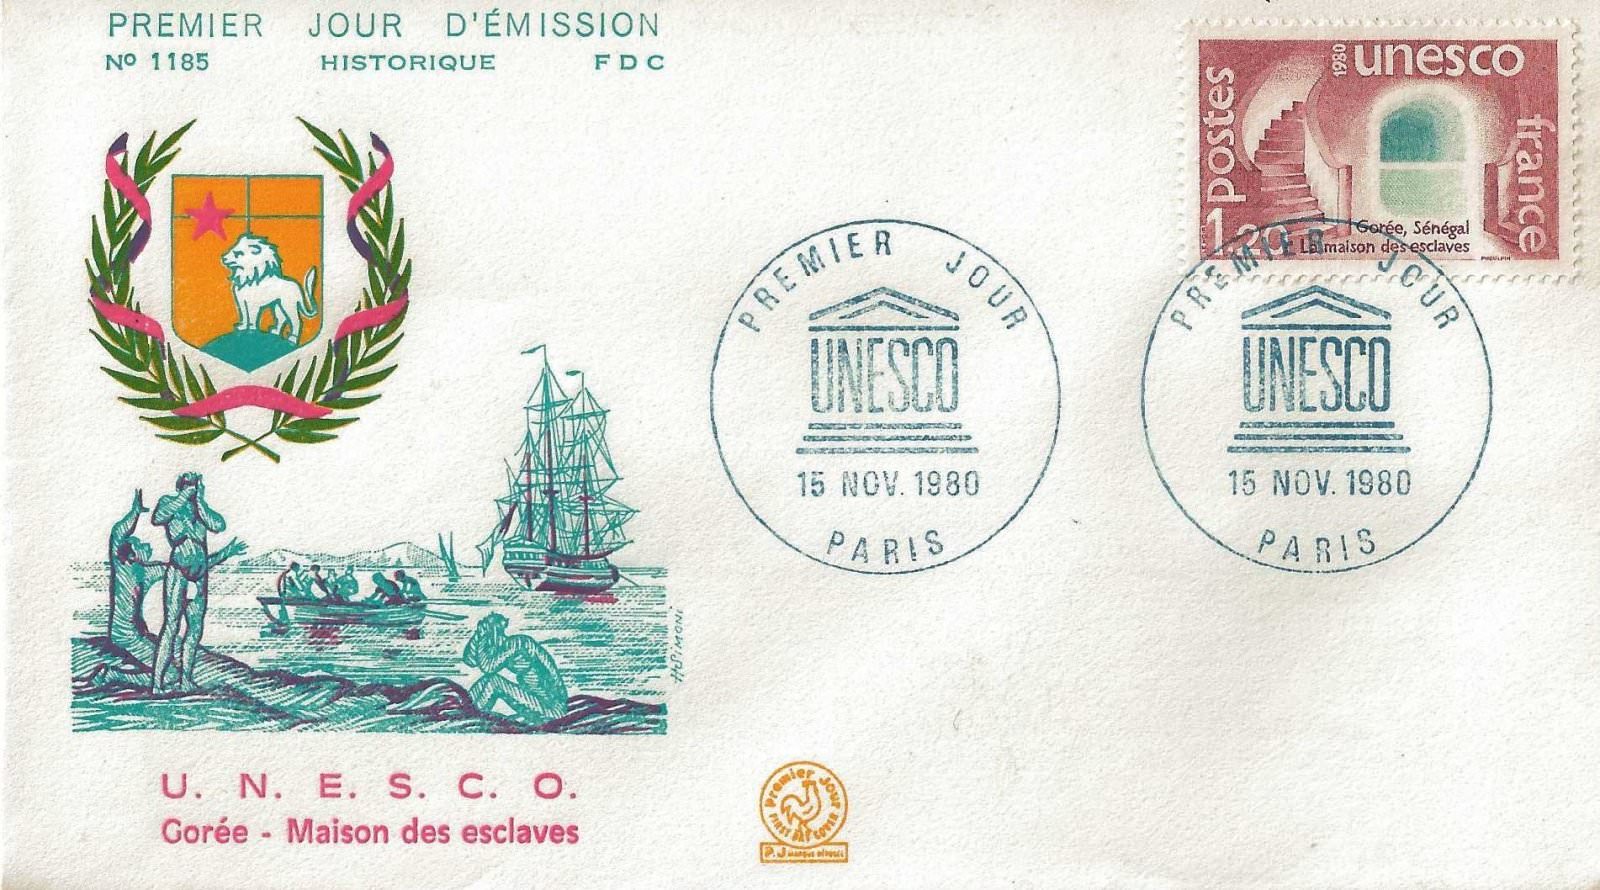 1980 UNESCO 1185